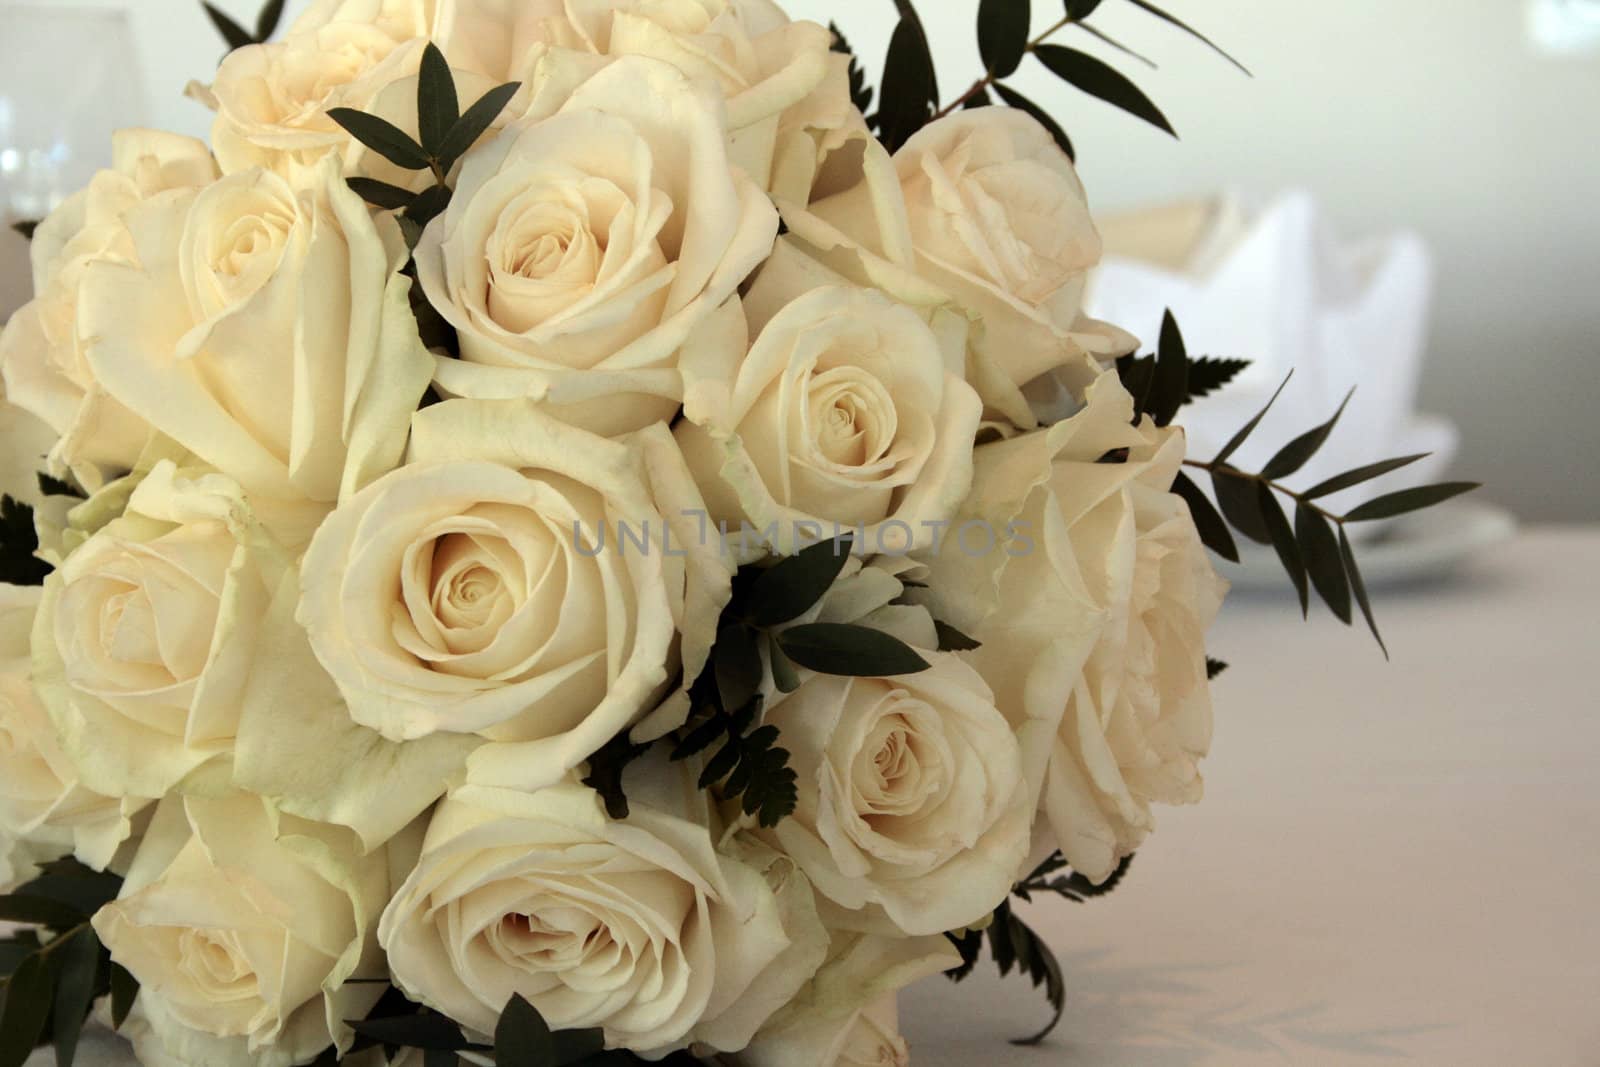 white wedding bouquet by sigthrudur